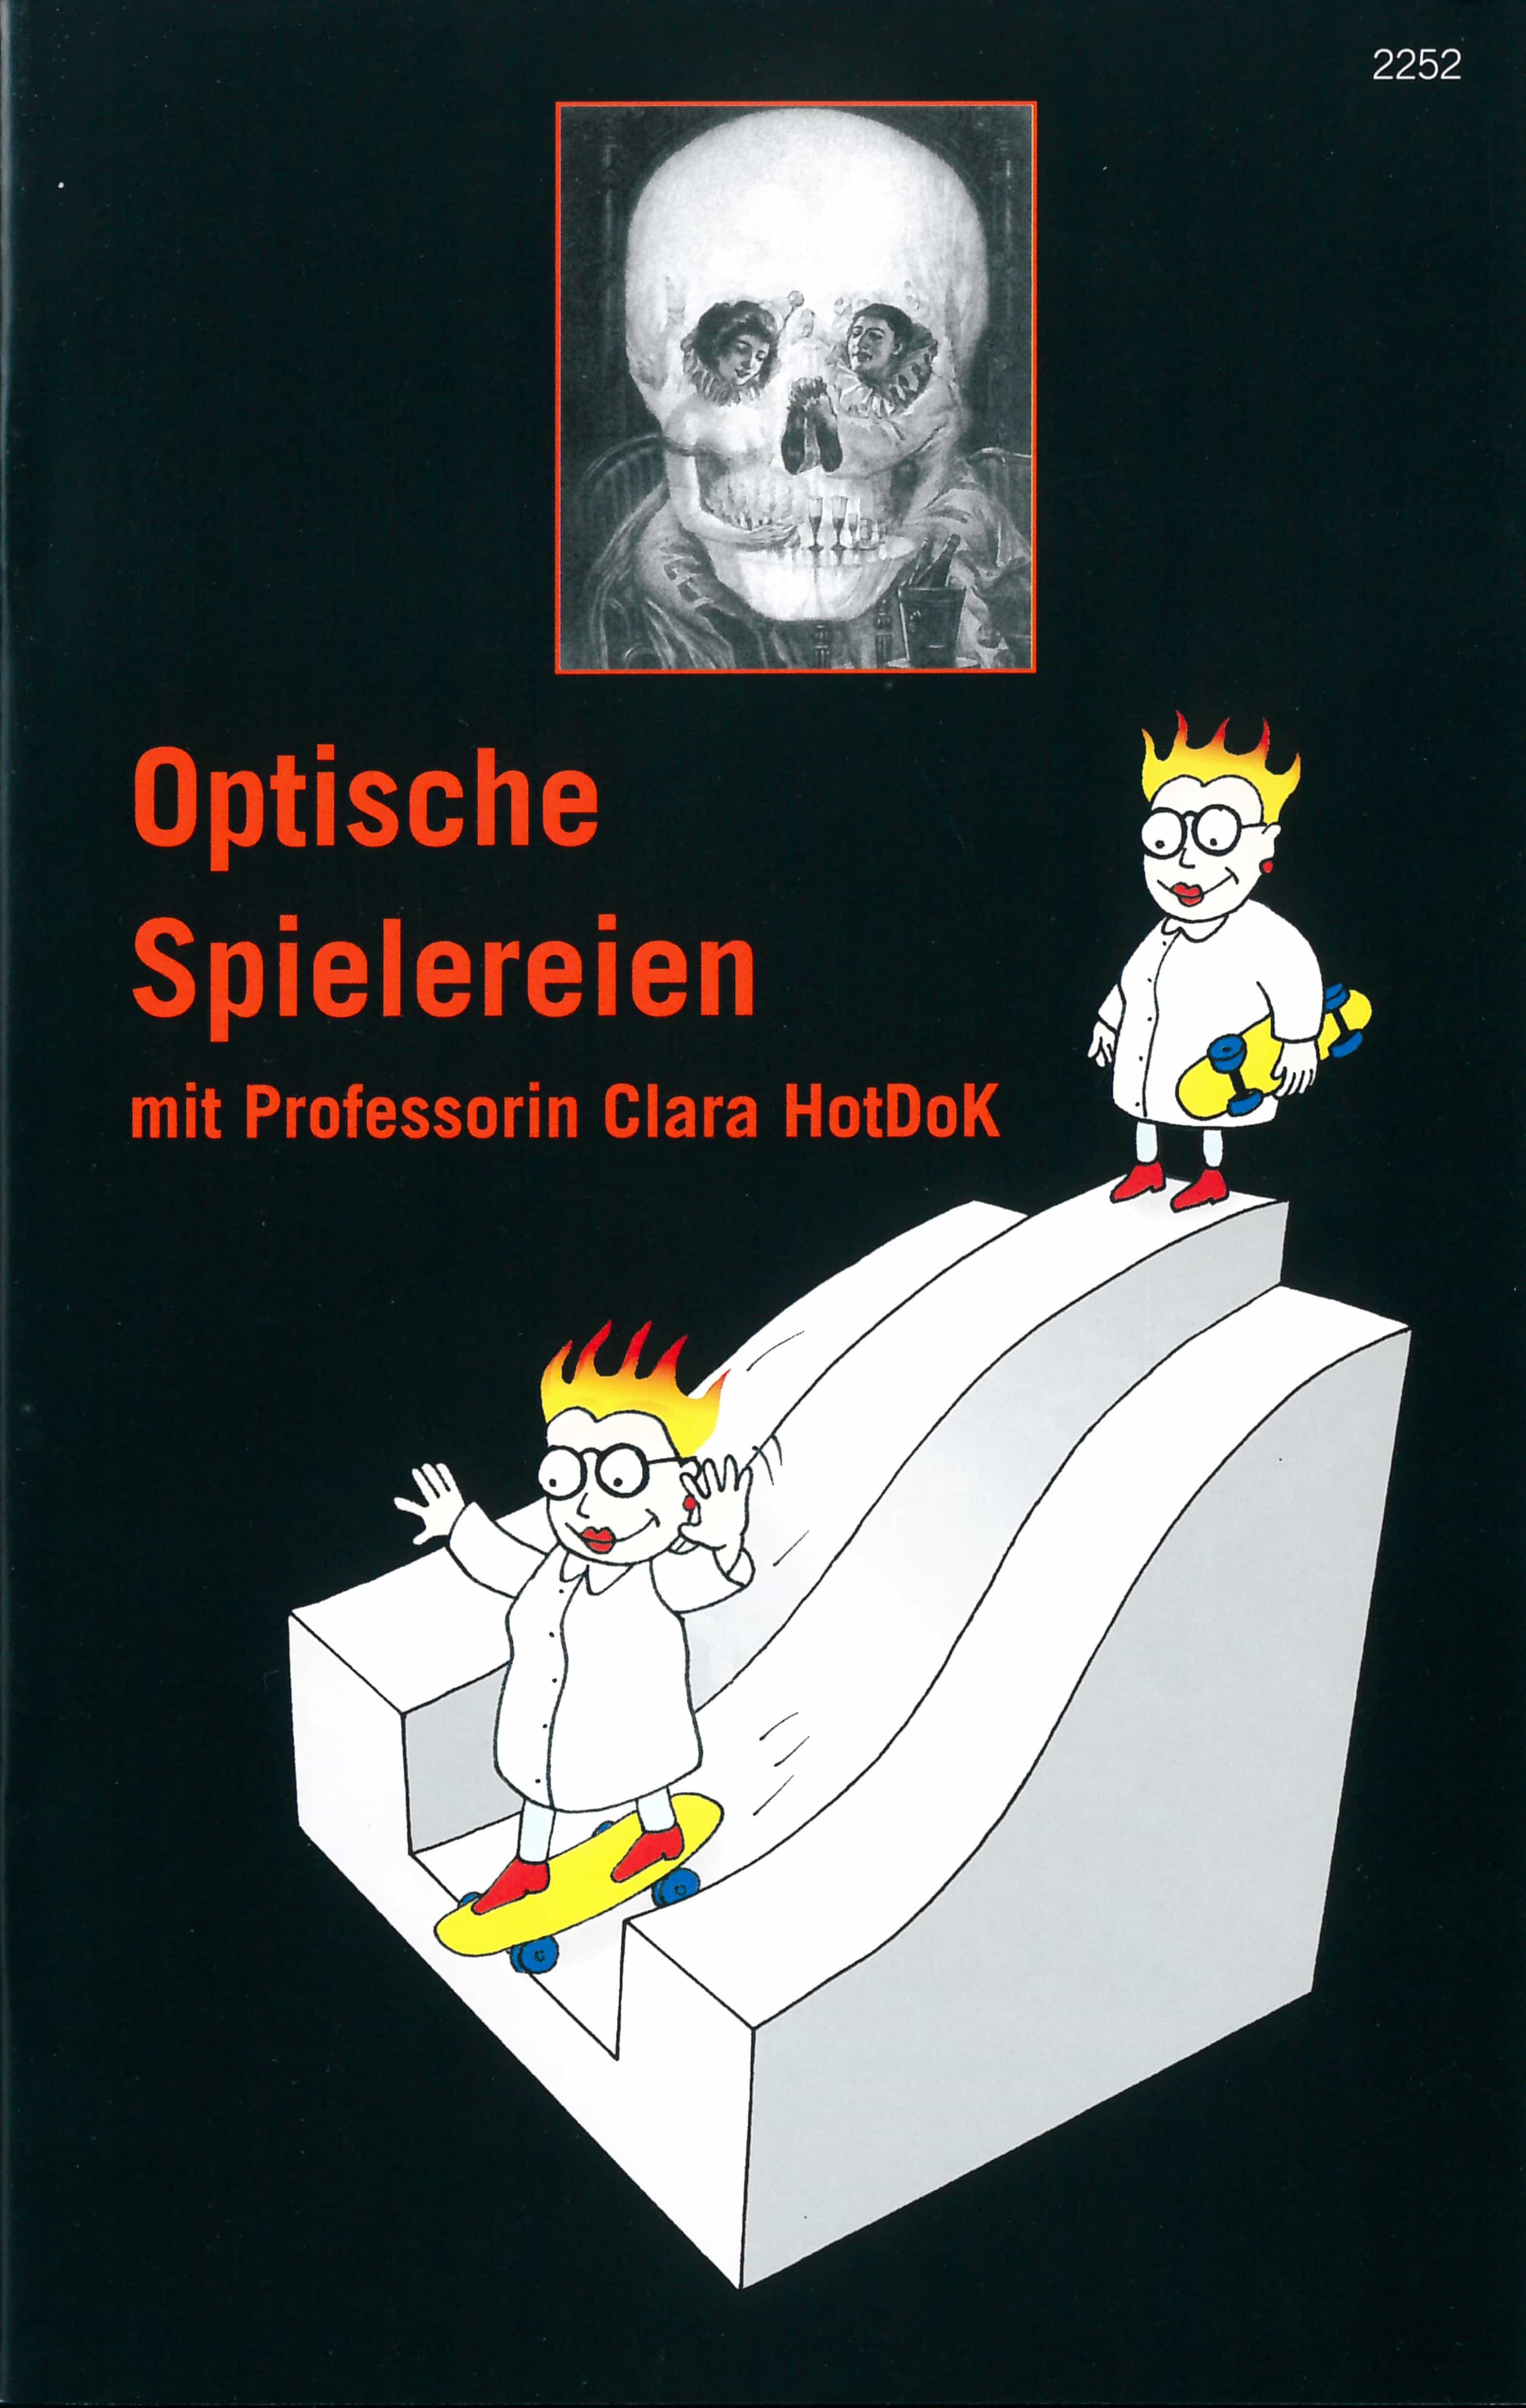 Optische Spielereien, ein Kinderbuch von Christof Stueckelberger, SJW Verlag, Experimente